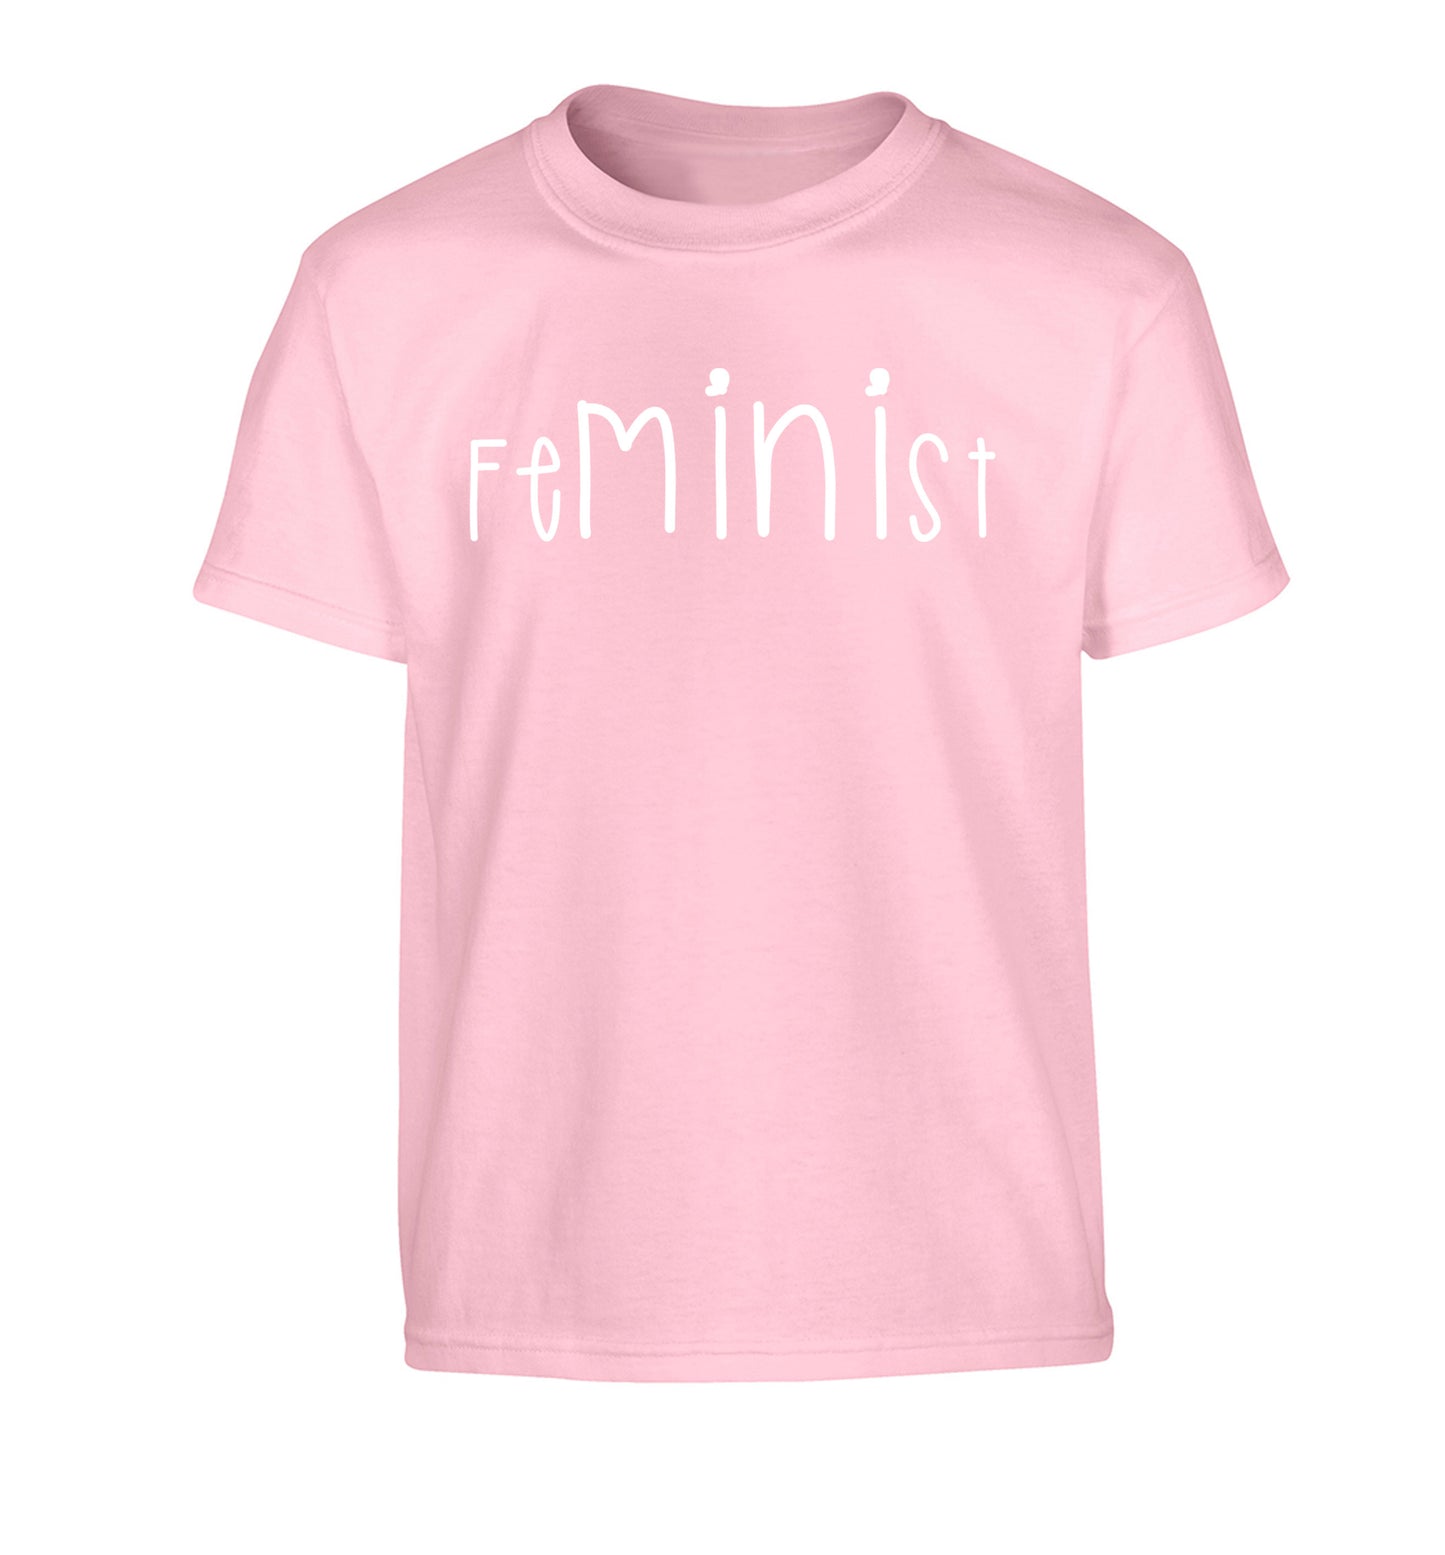 FeMINIst Children's light pink Tshirt 12-14 Years